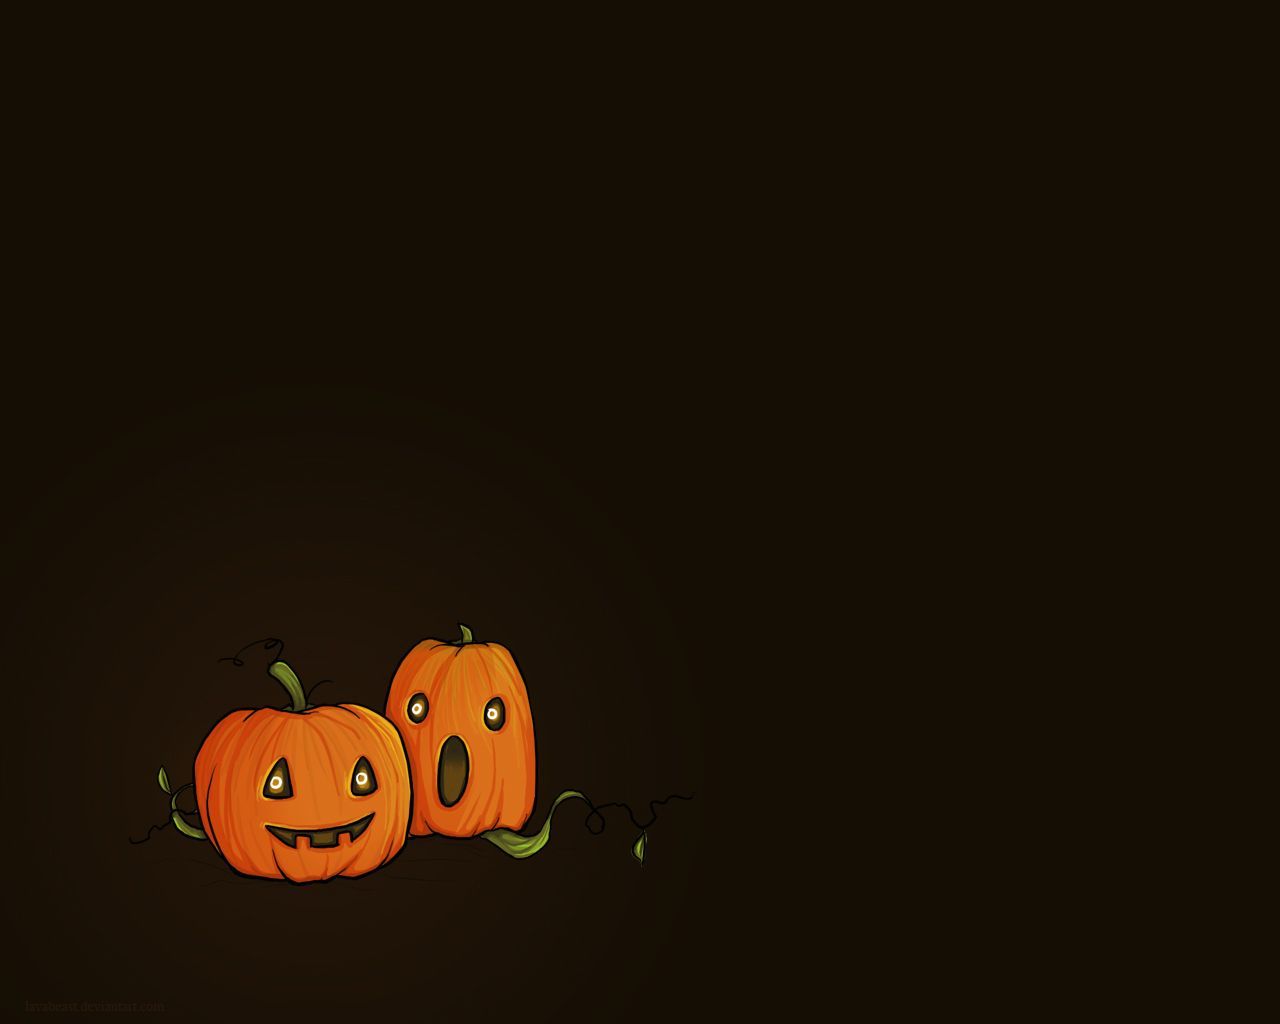 Cute Halloween Desktop Wallpaper. Halloween desktop wallpaper, Pumpkin wallpaper, Halloween wallpaper iphone